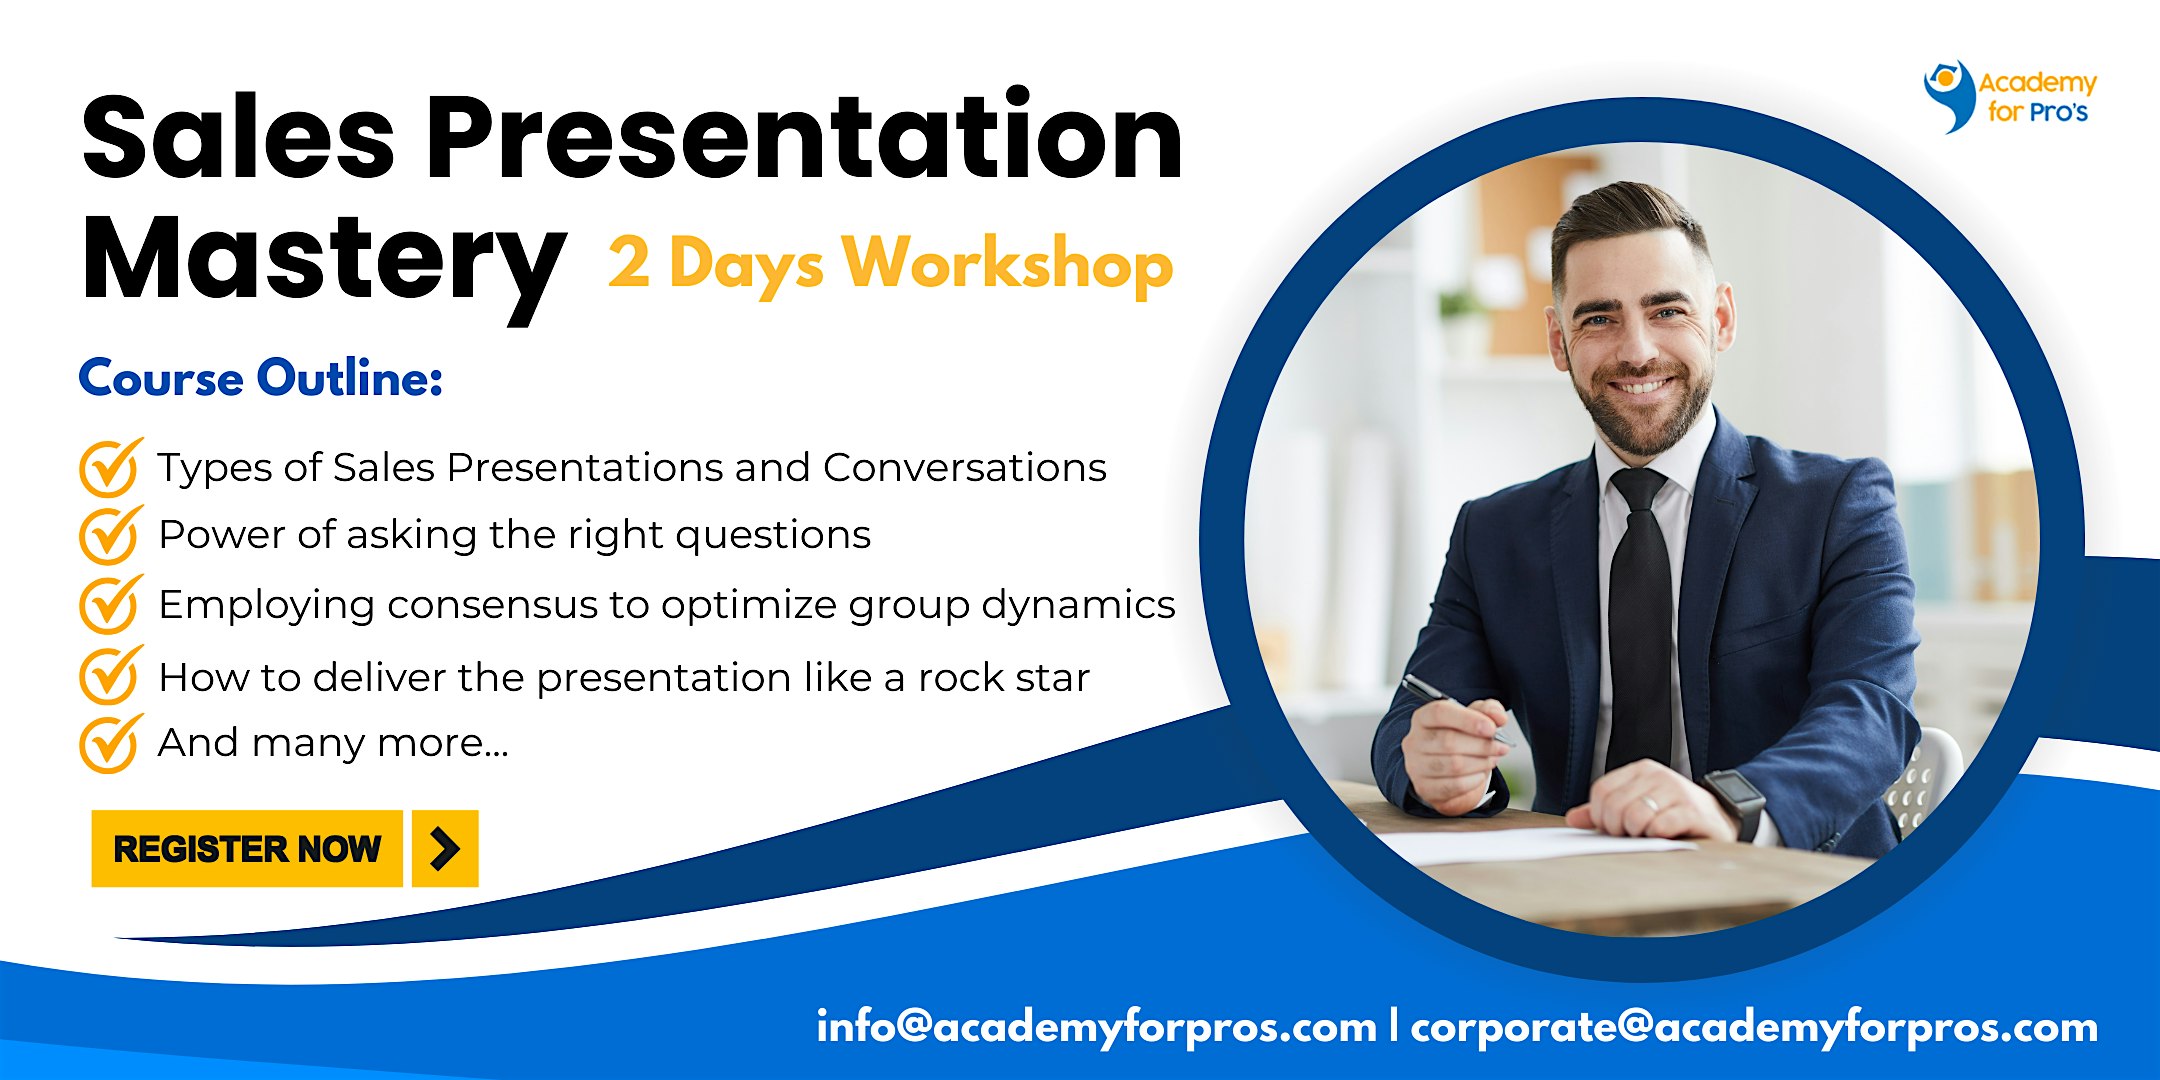 Sales Presentation Mastery 2 Days Workshop in Odessa, TX